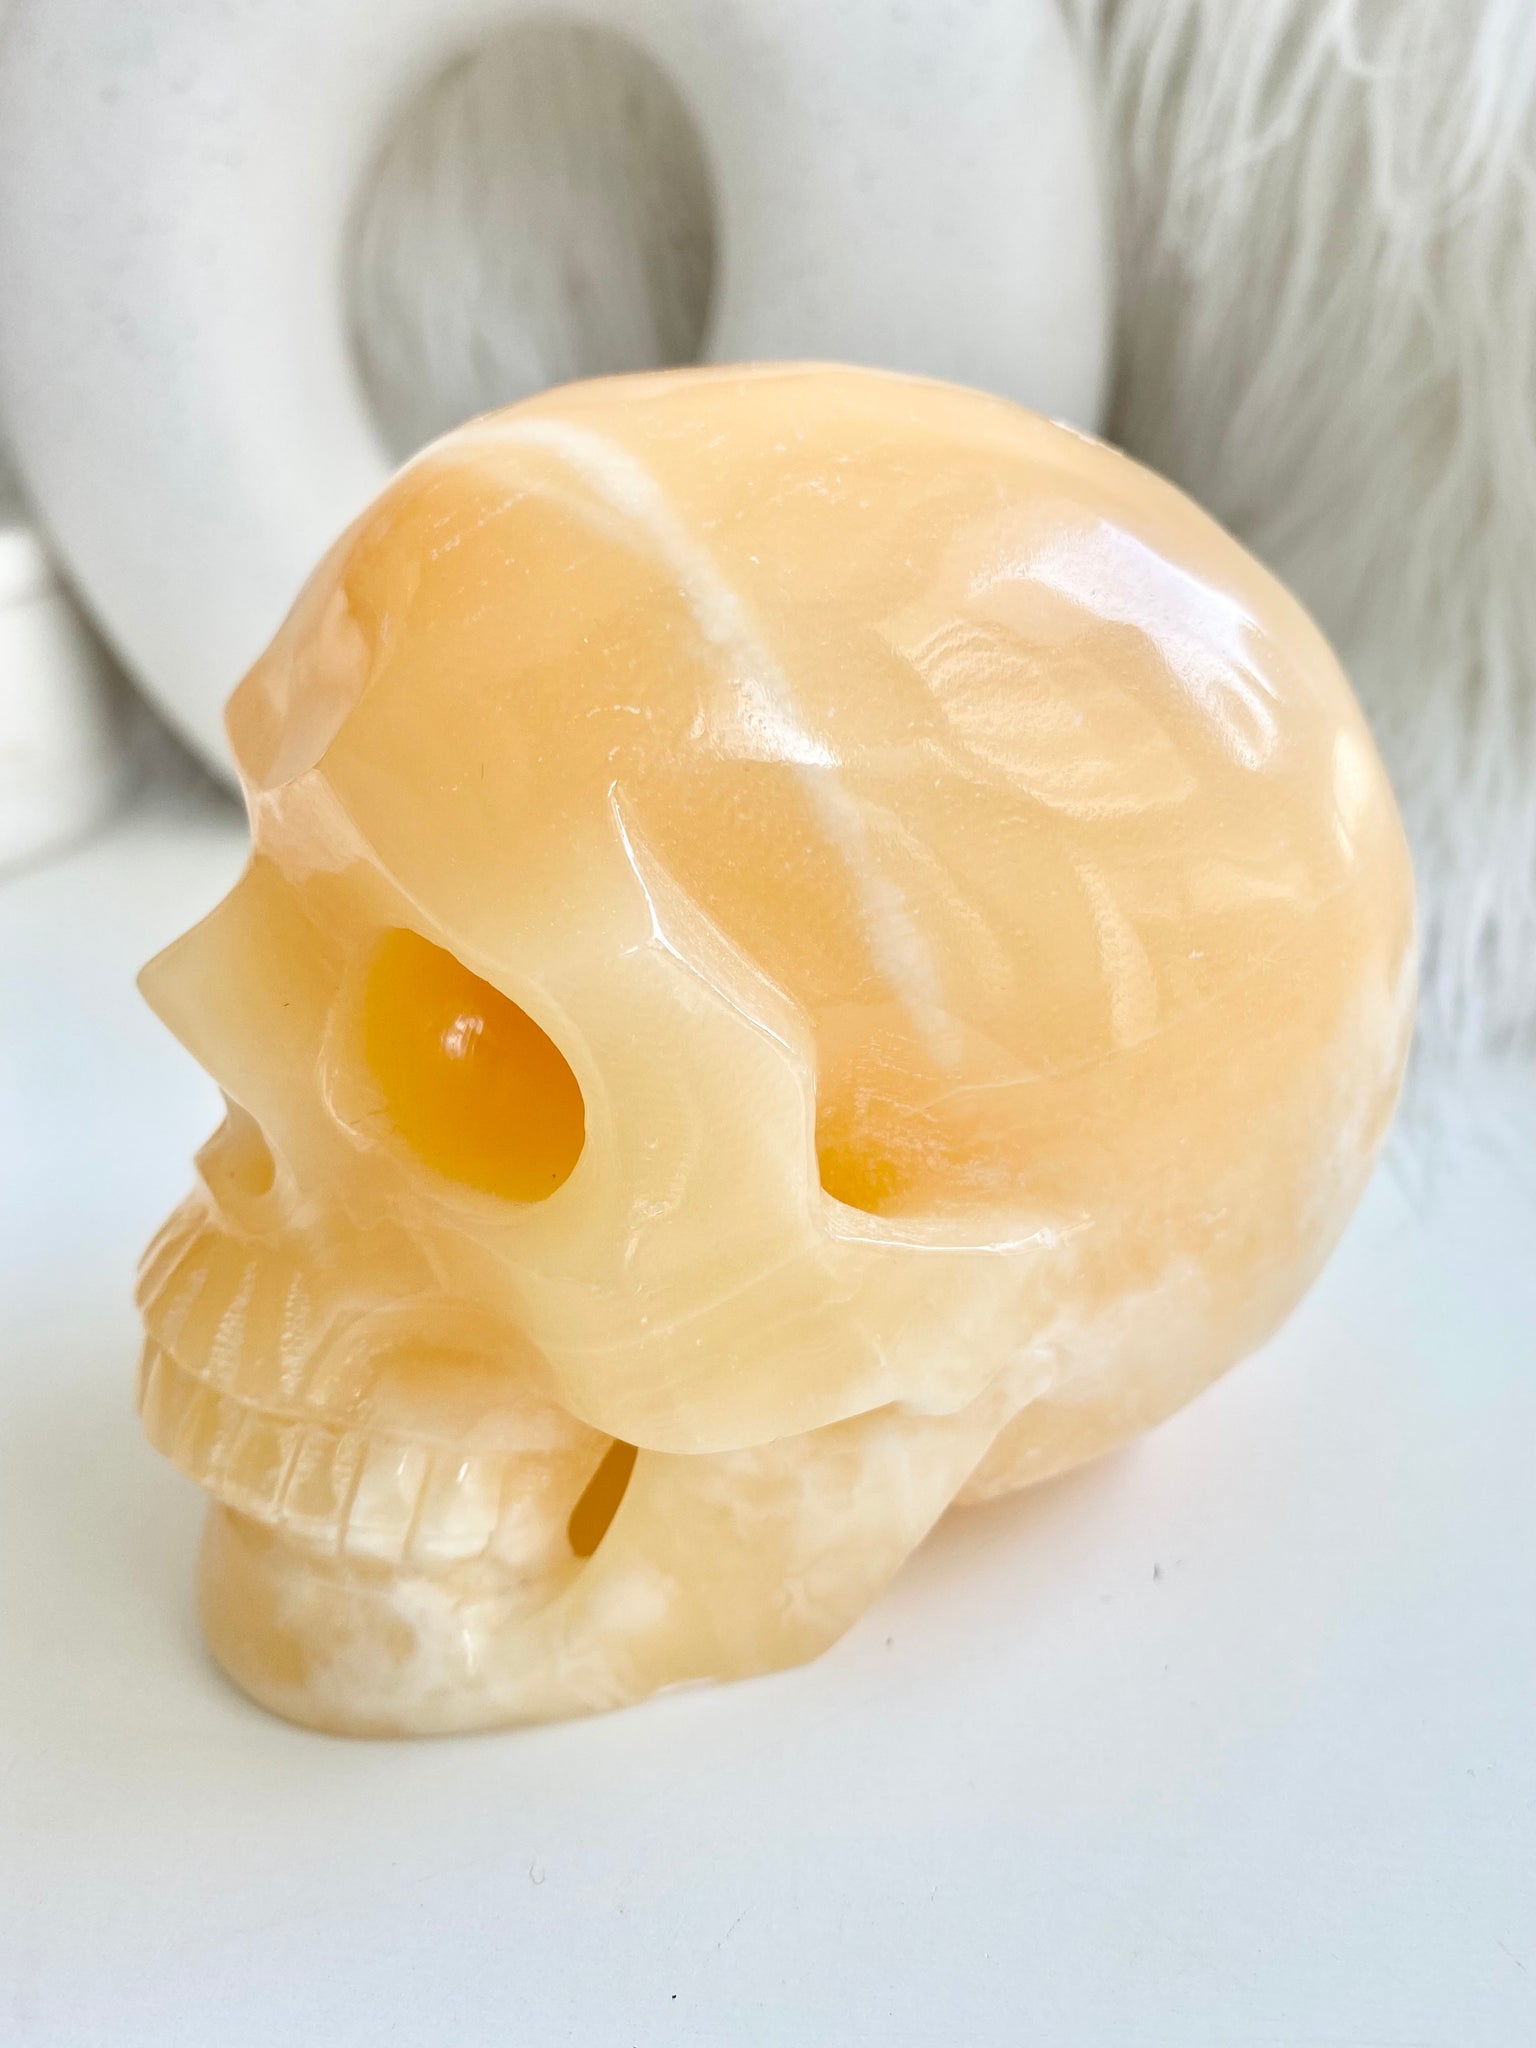 Orange Calcite Skull #4